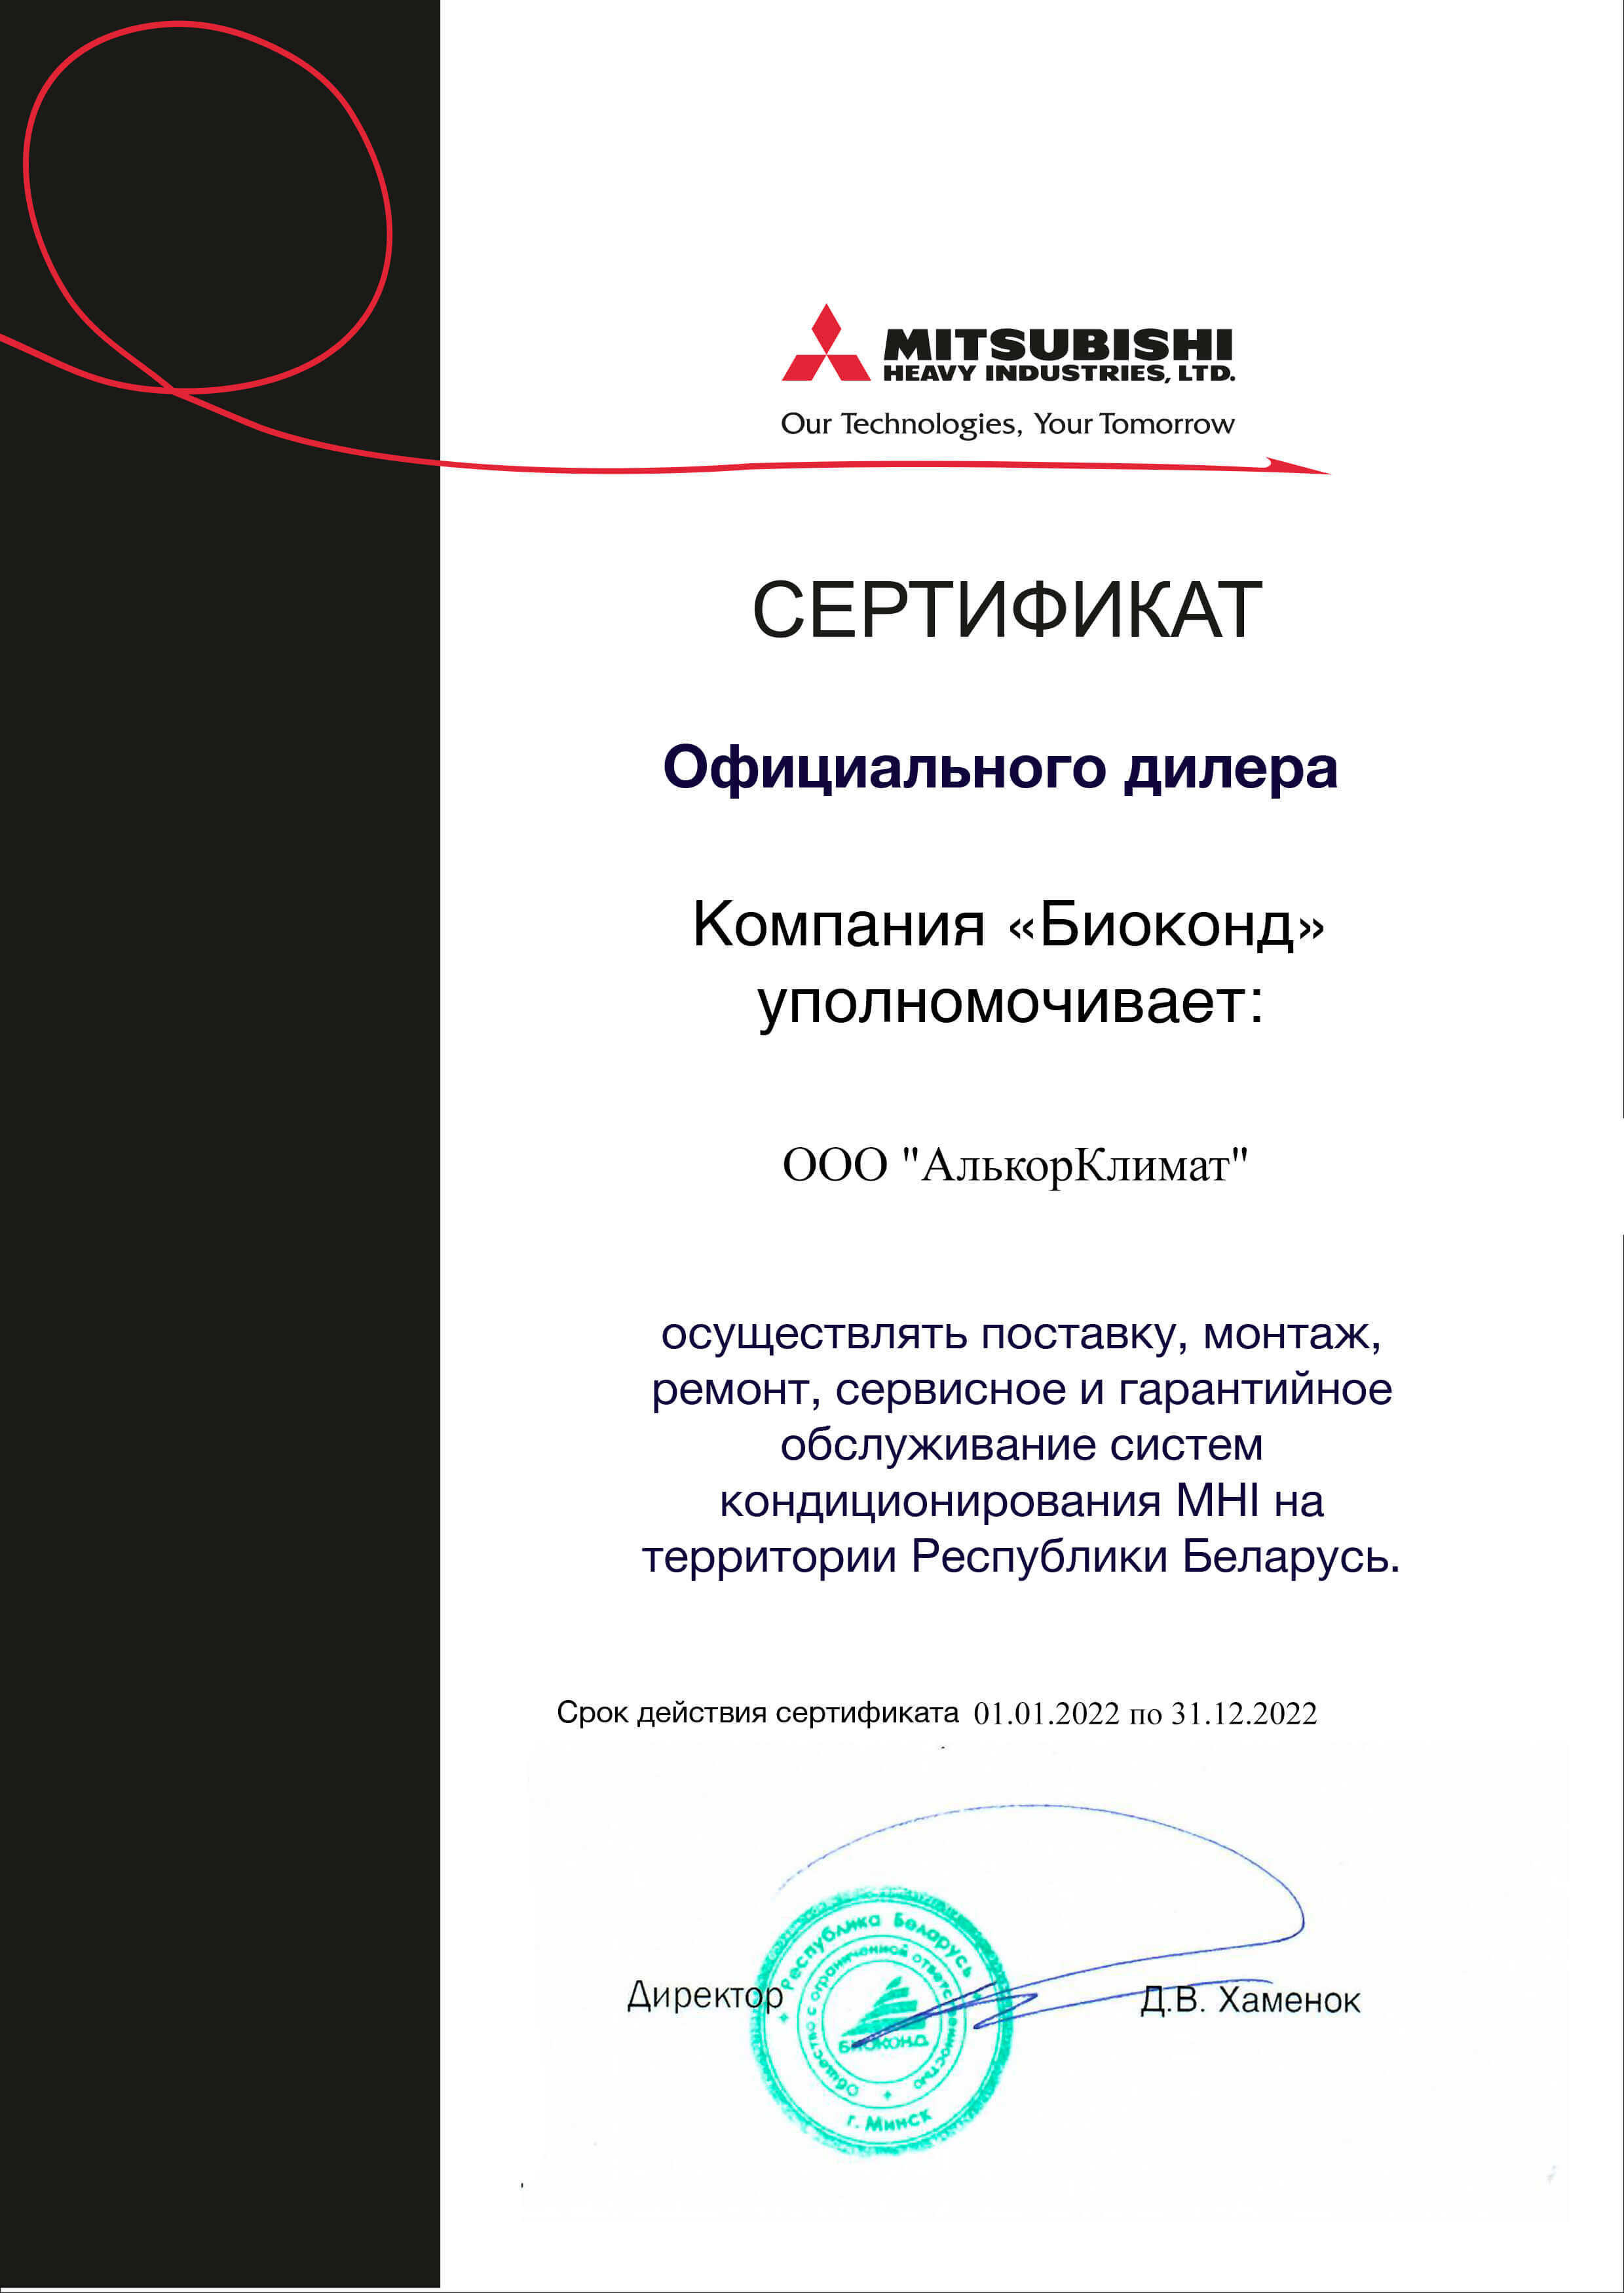 Сертификат официального дилера Mitsubishi в РБ